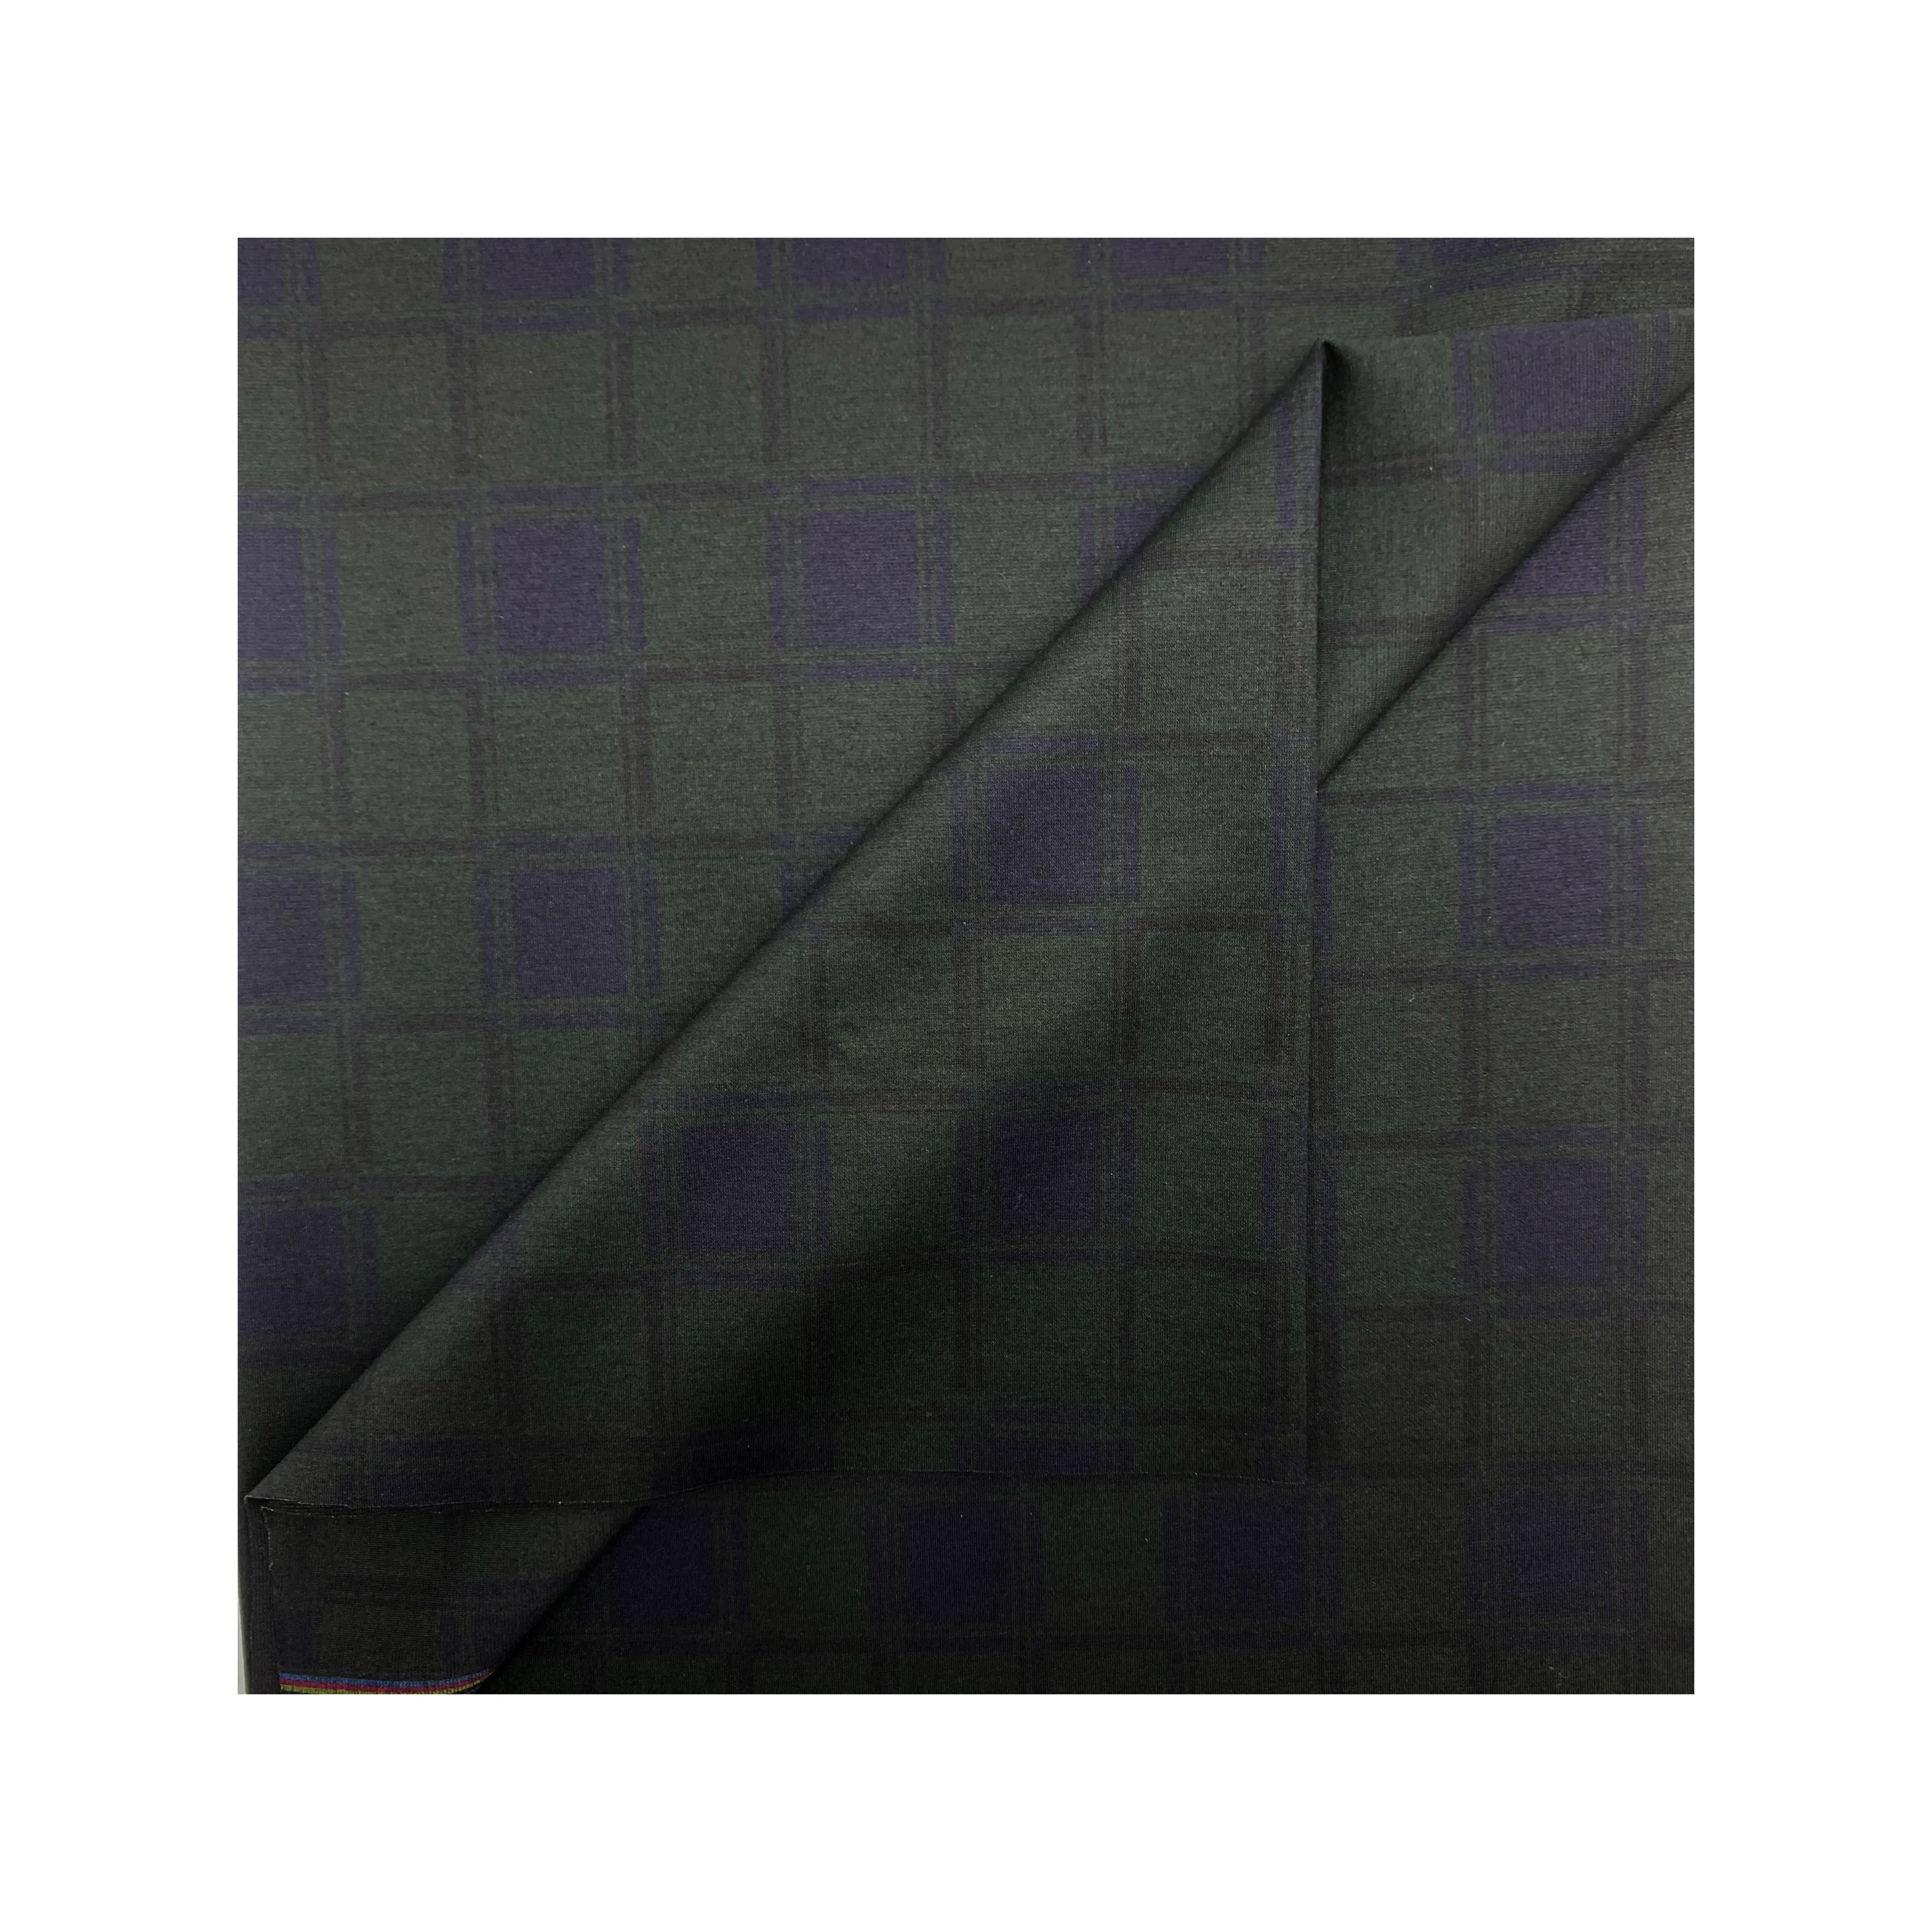 Kain setelan bisnis tekstil bahan baku poliester rayon spandeks kain tenun viscose/kain poliester untuk pakaian wanita